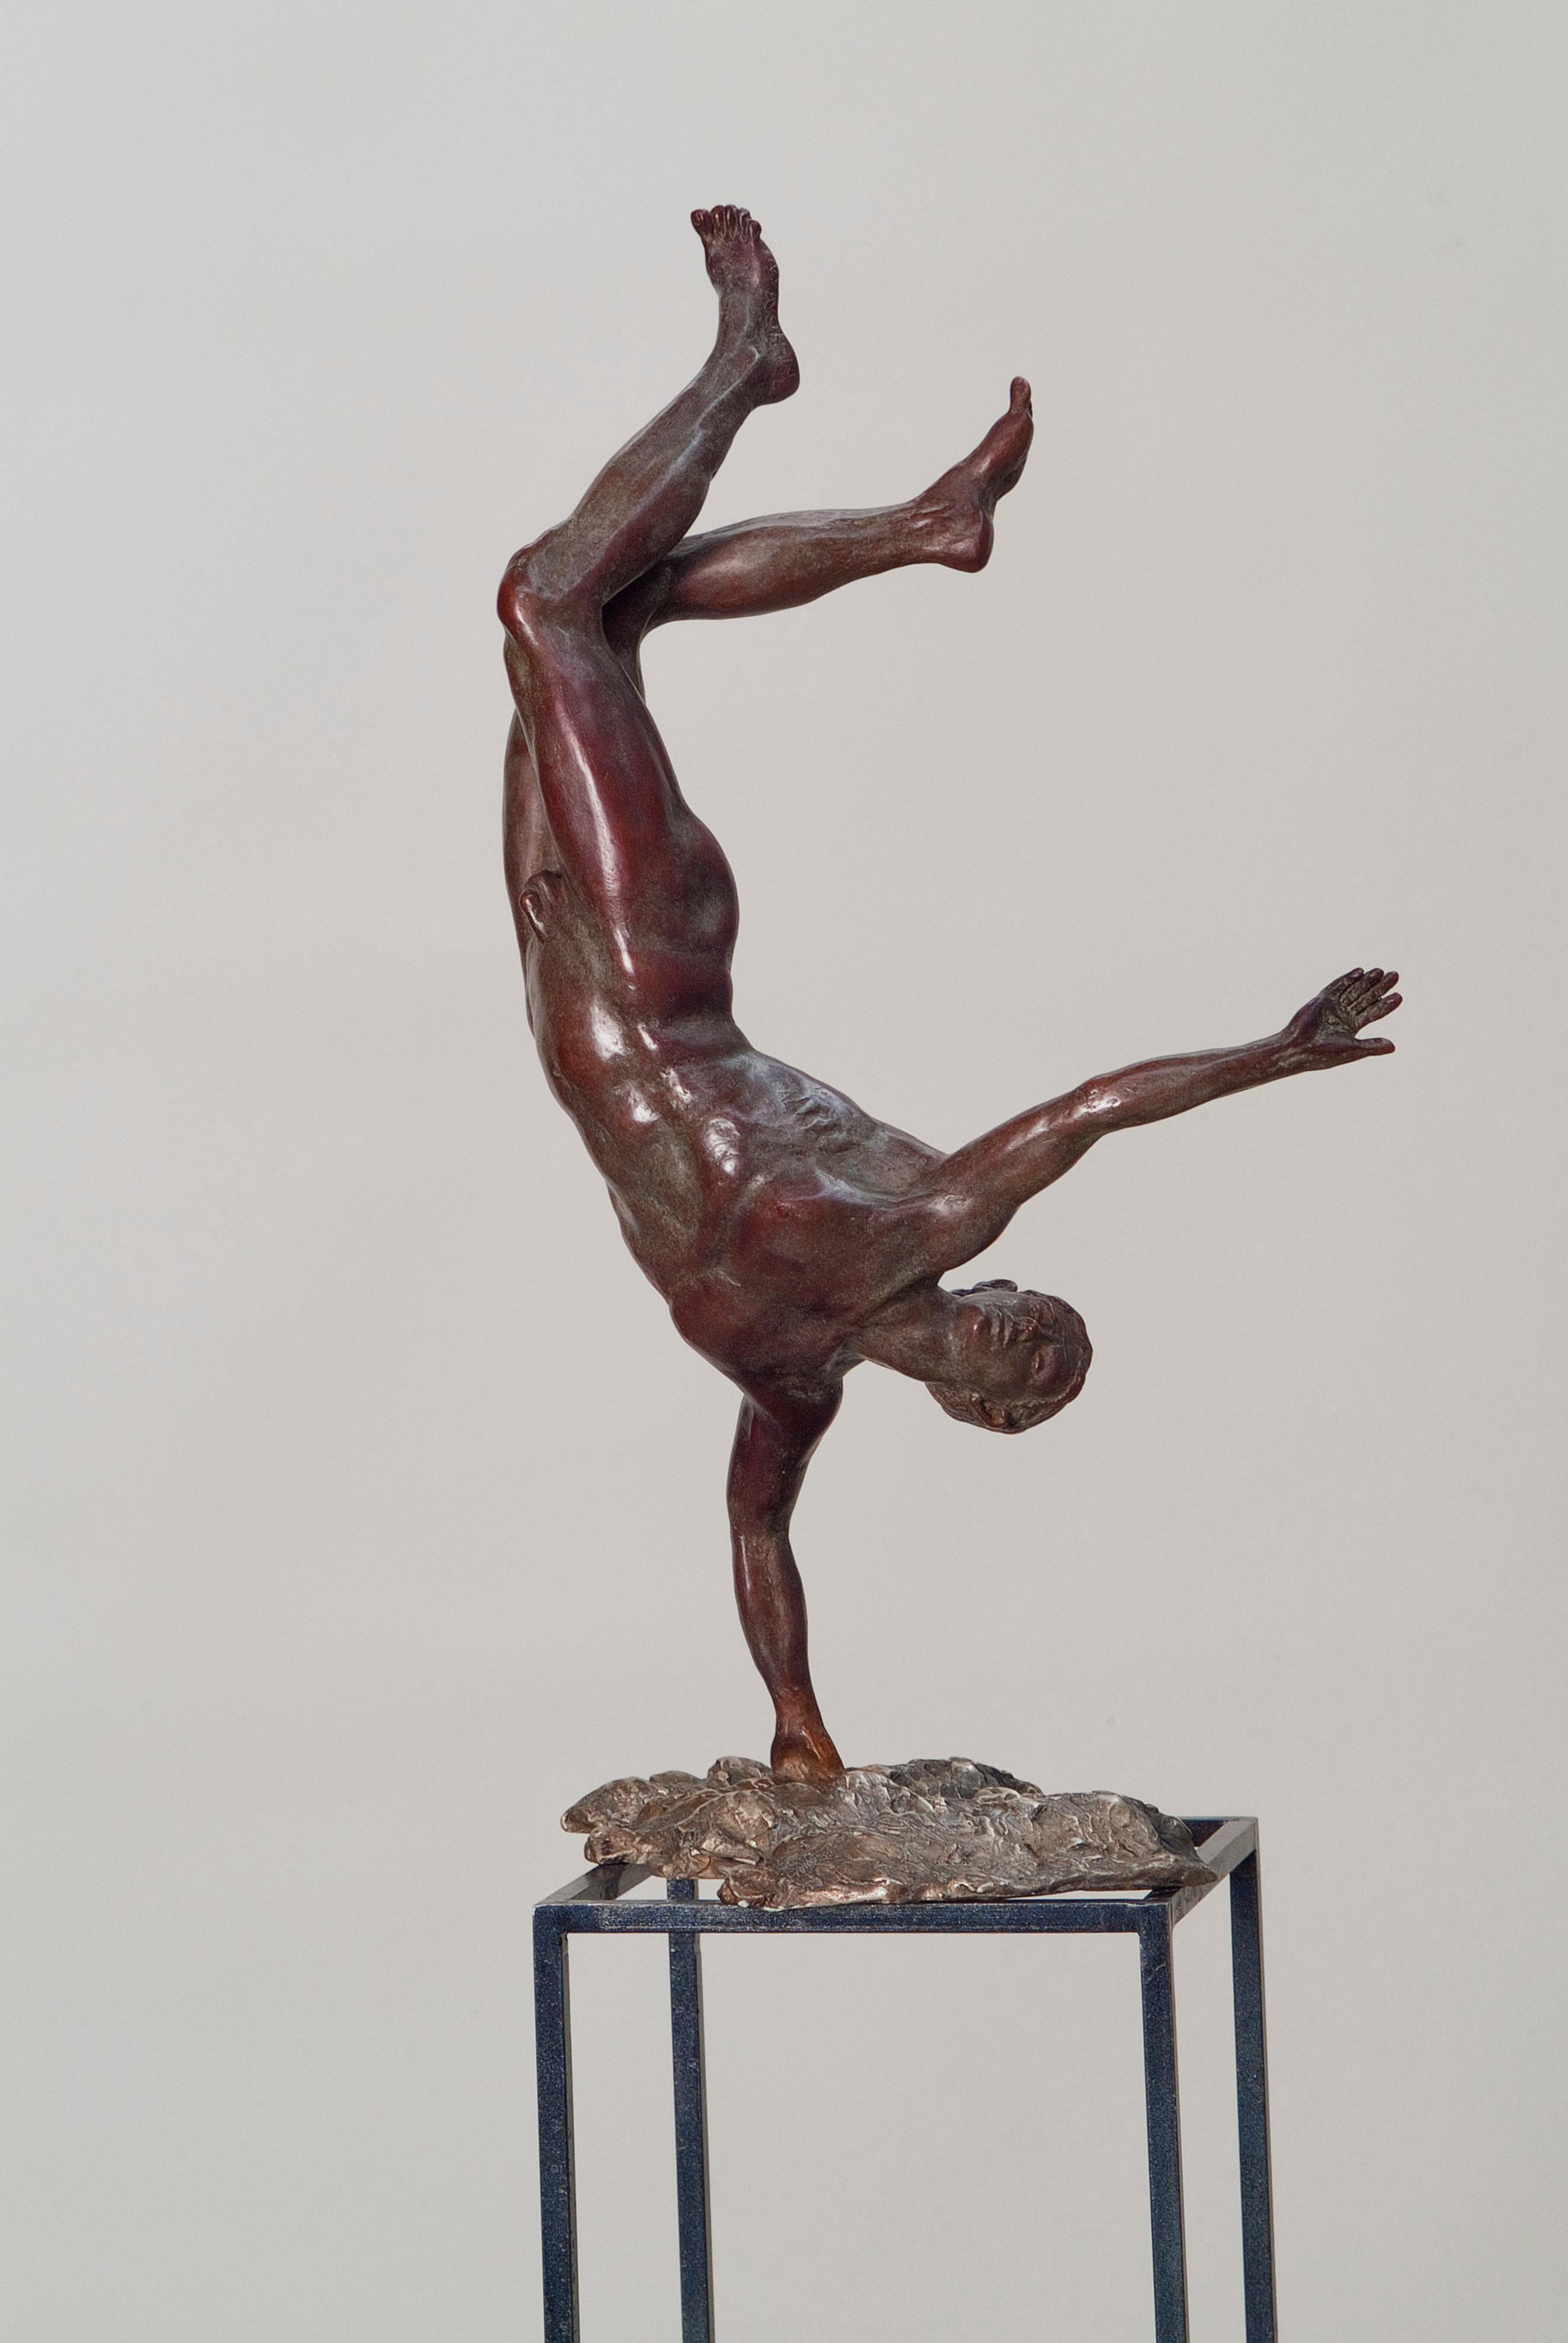 Zenith Bronzeskulptur Mythologie Klassische Zeitgenössische Nackte Männliche Figur. Die Größe ist inklusive Sockel.

Die Skulpturen von Margot Homan (1956, Oss, Niederlande) zeigen eine perfekte Beherrschung des alten Handwerks des Modellierens und